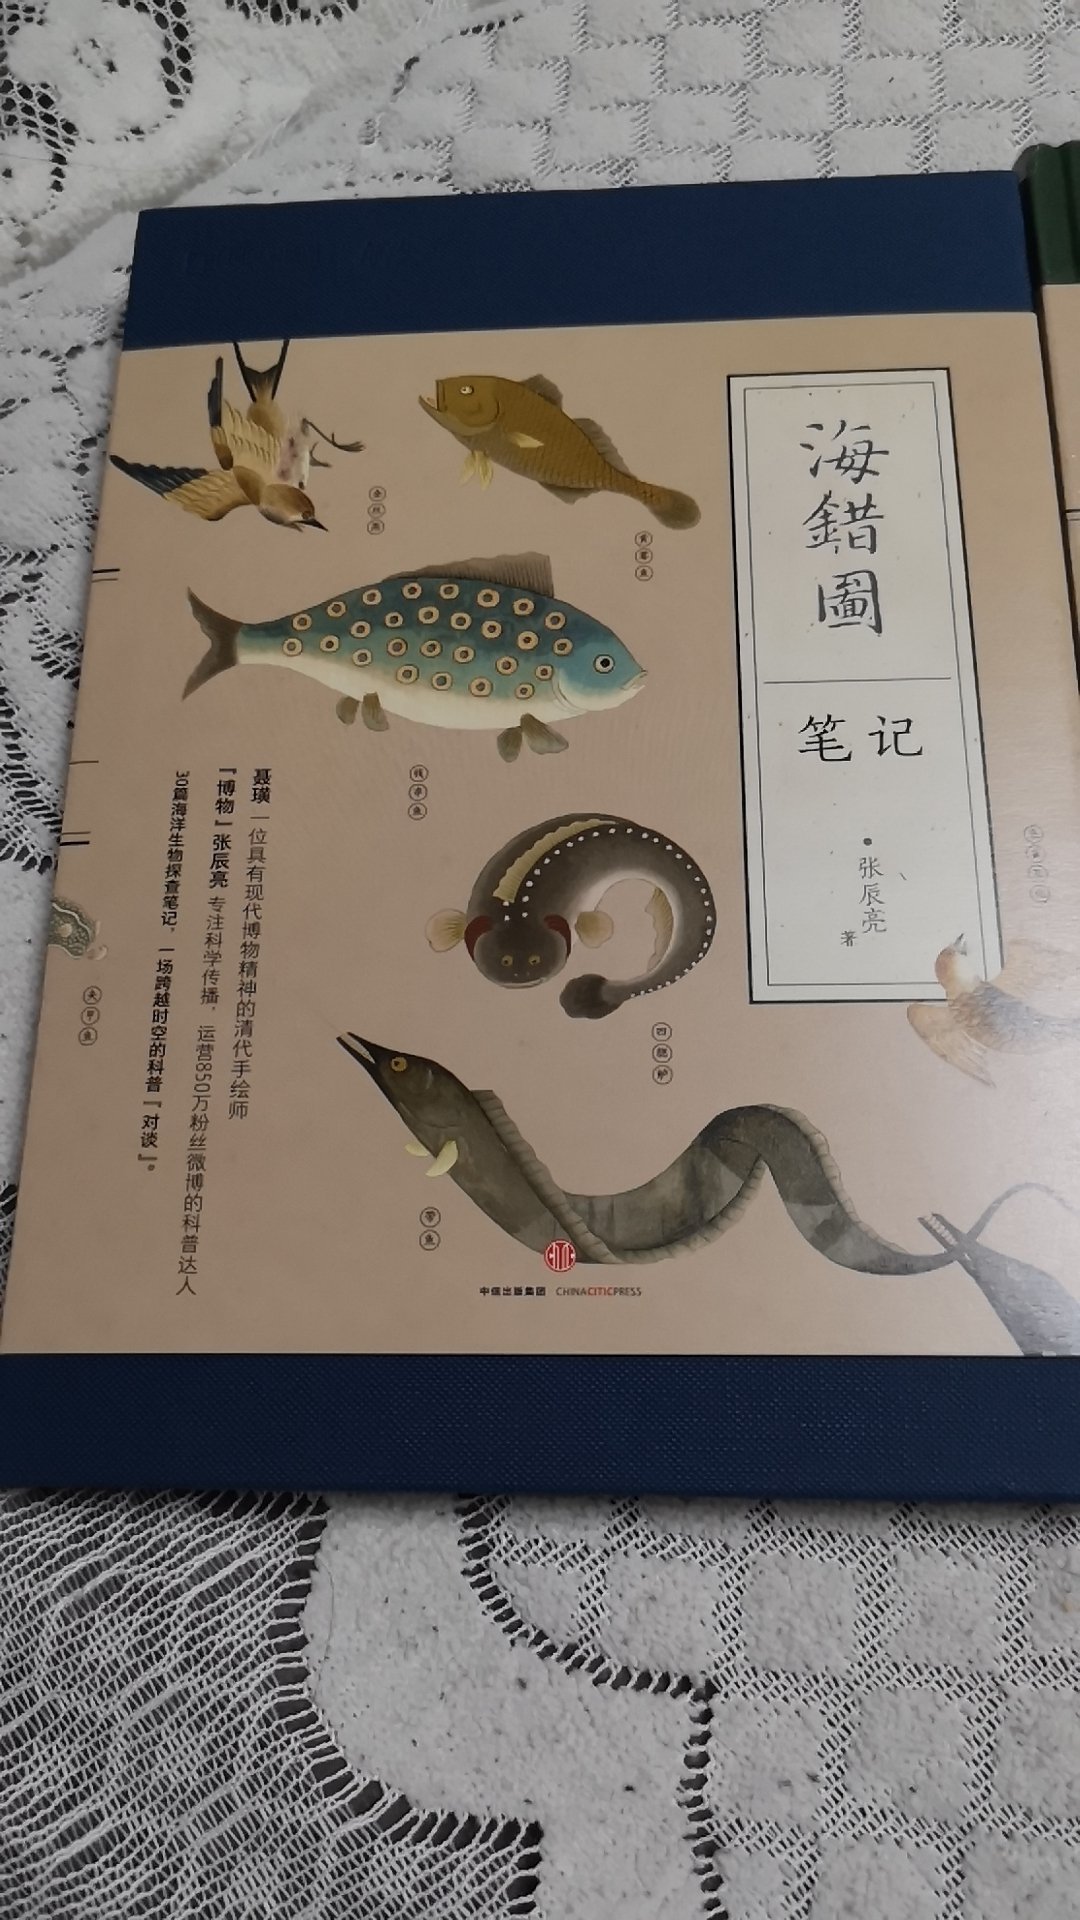 中国国家地理 海错图笔记·2内容很好，印刷精美，准备收藏了。